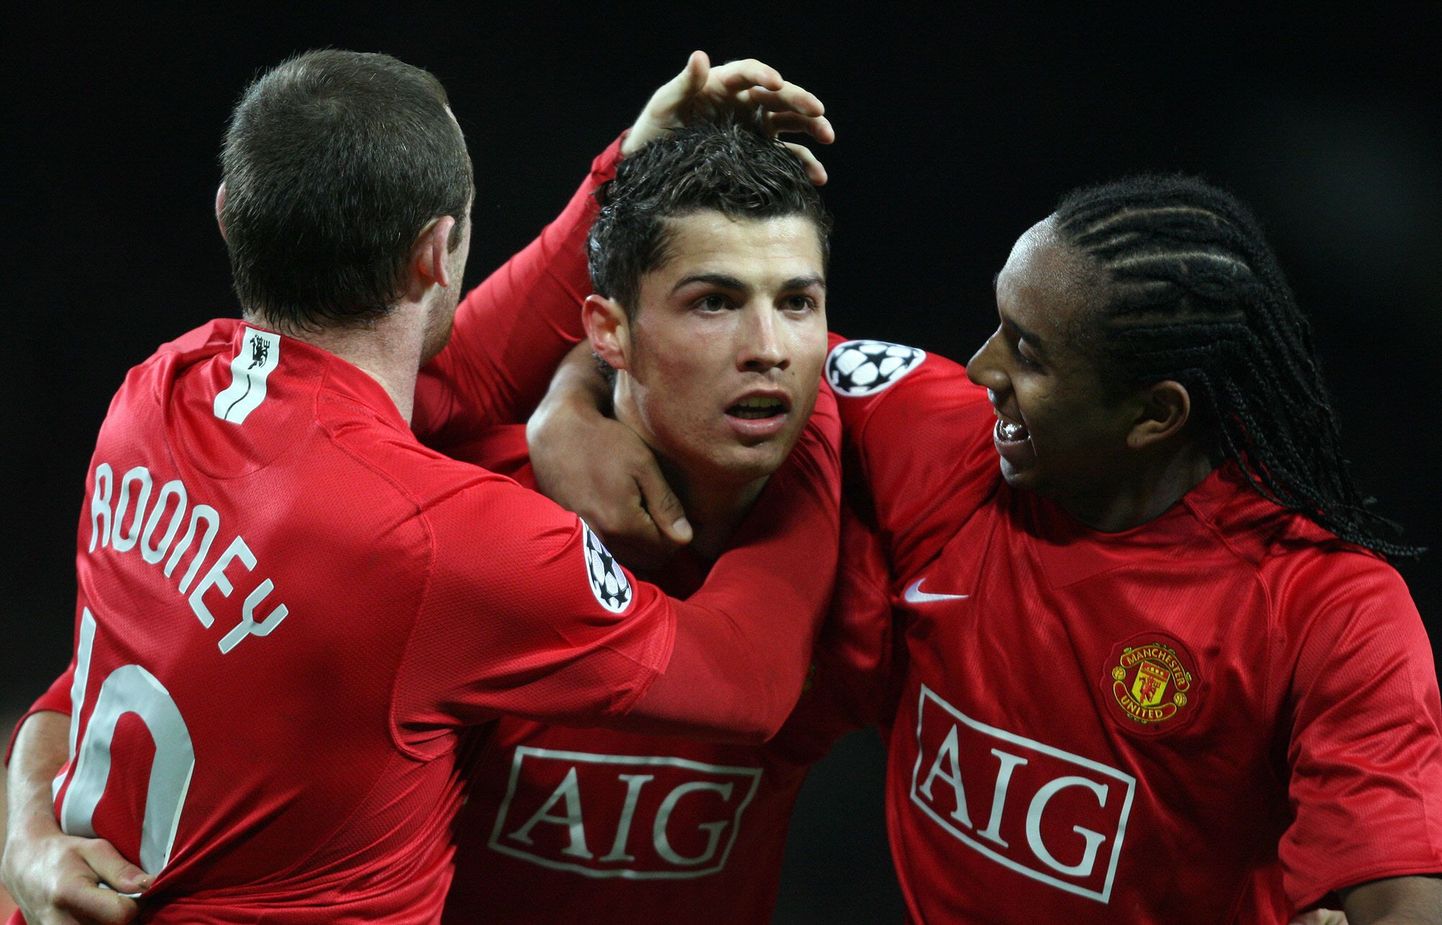 Manchester Unitedi mängijad kannavad punaseid särke. Fotol Cristiano Ronaldo (keskel),Wayne Rooney (vasakul) ja Anderson